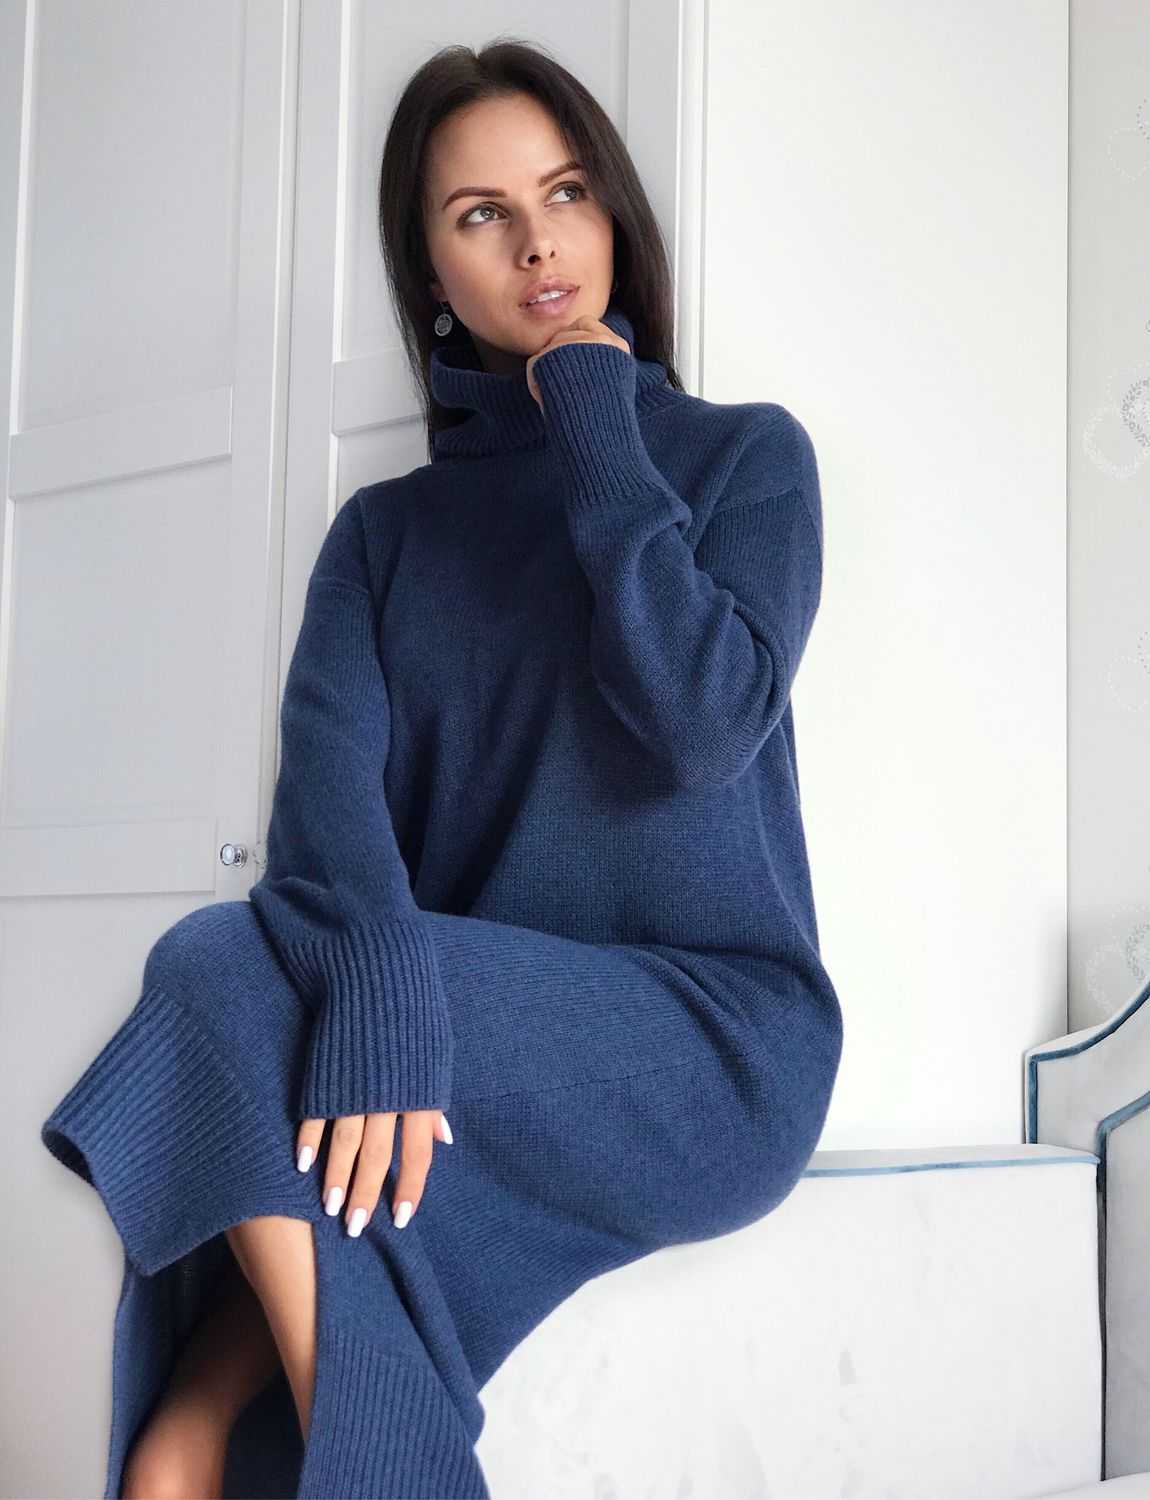 Женские свитера и пуловеры: мода сезона 2021-2022, фото-обзор стильных моделей